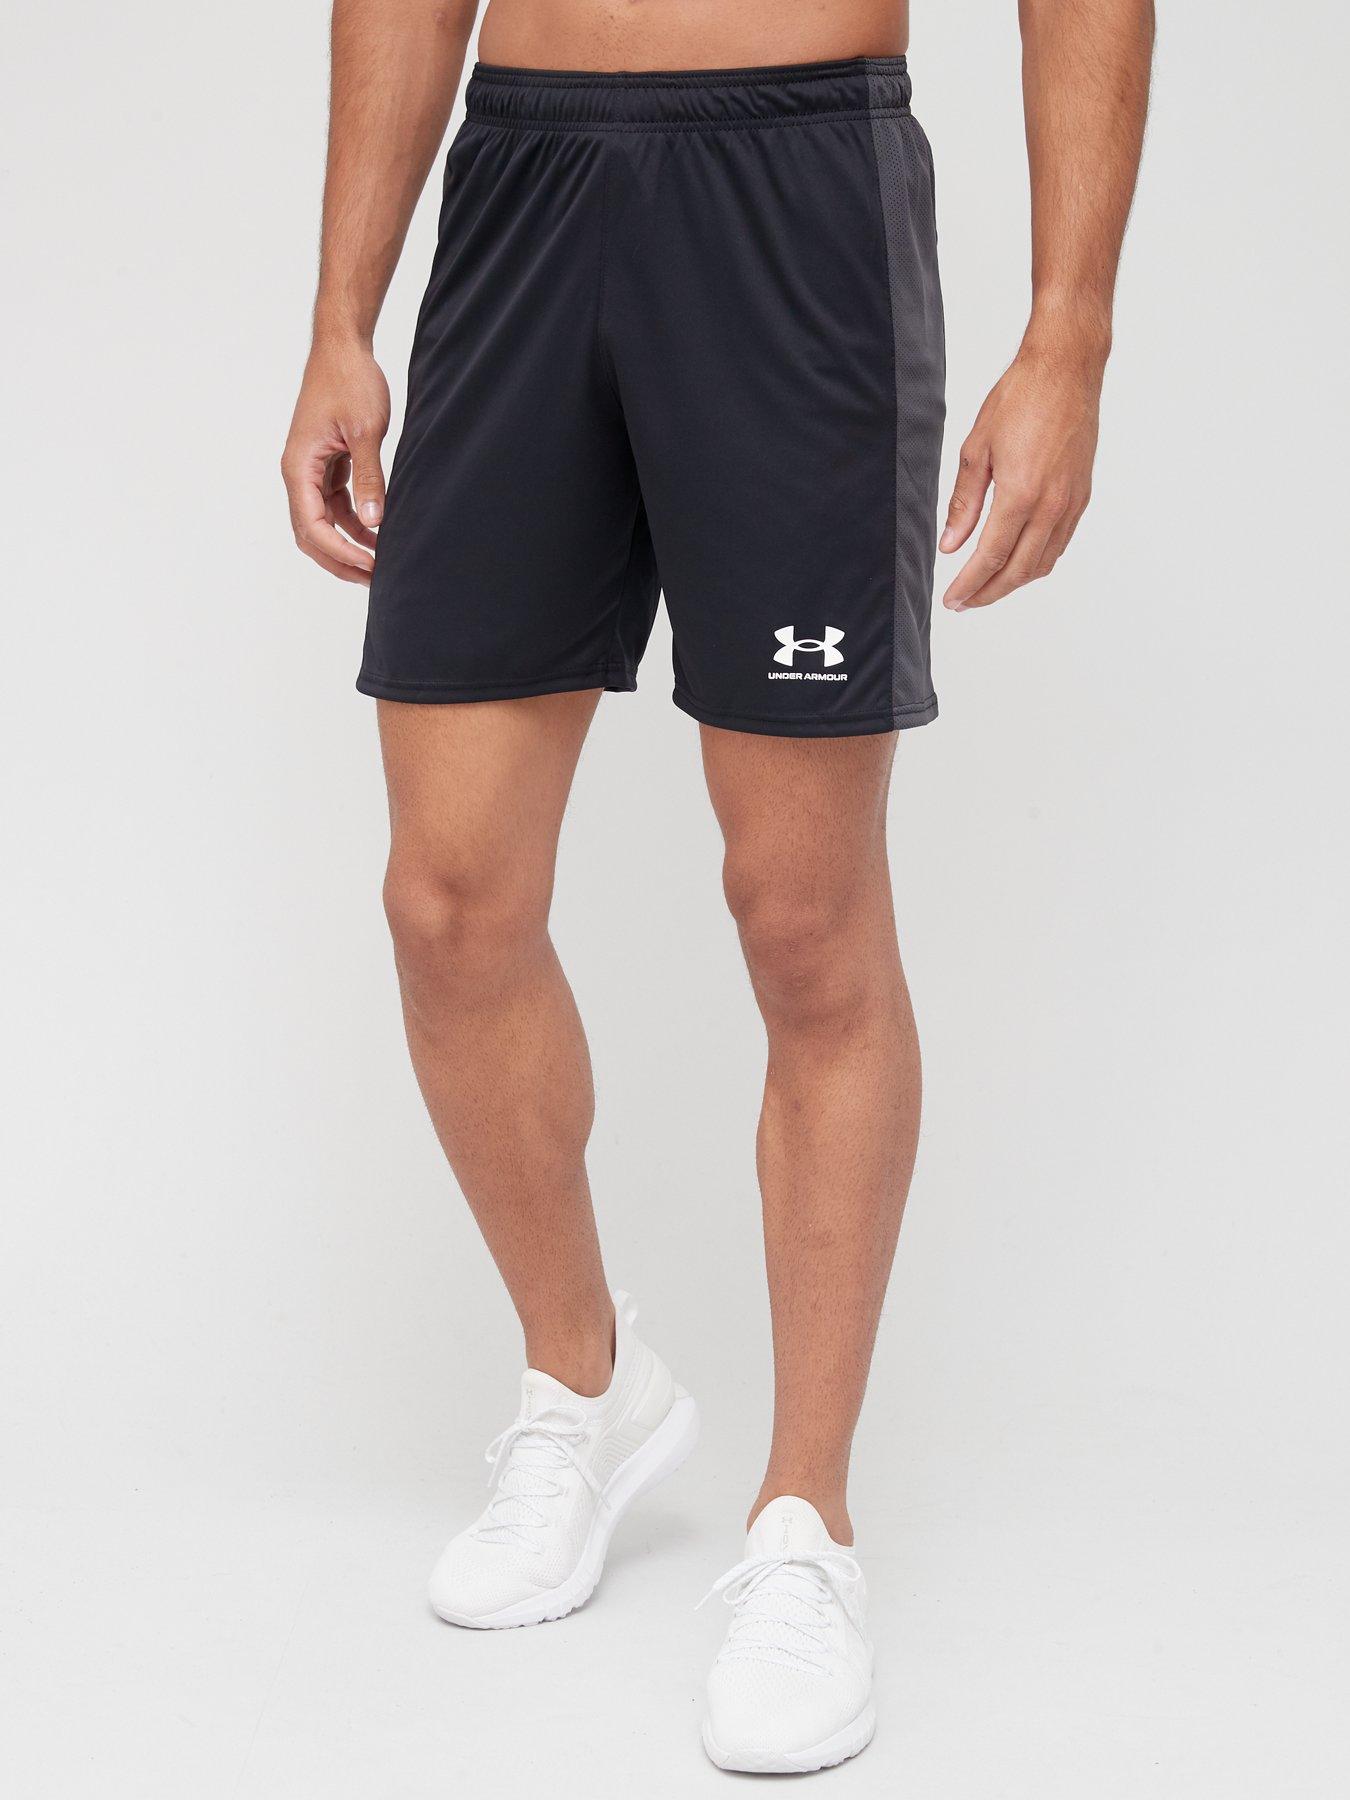 Shorts Challenger Shorts - Black/White